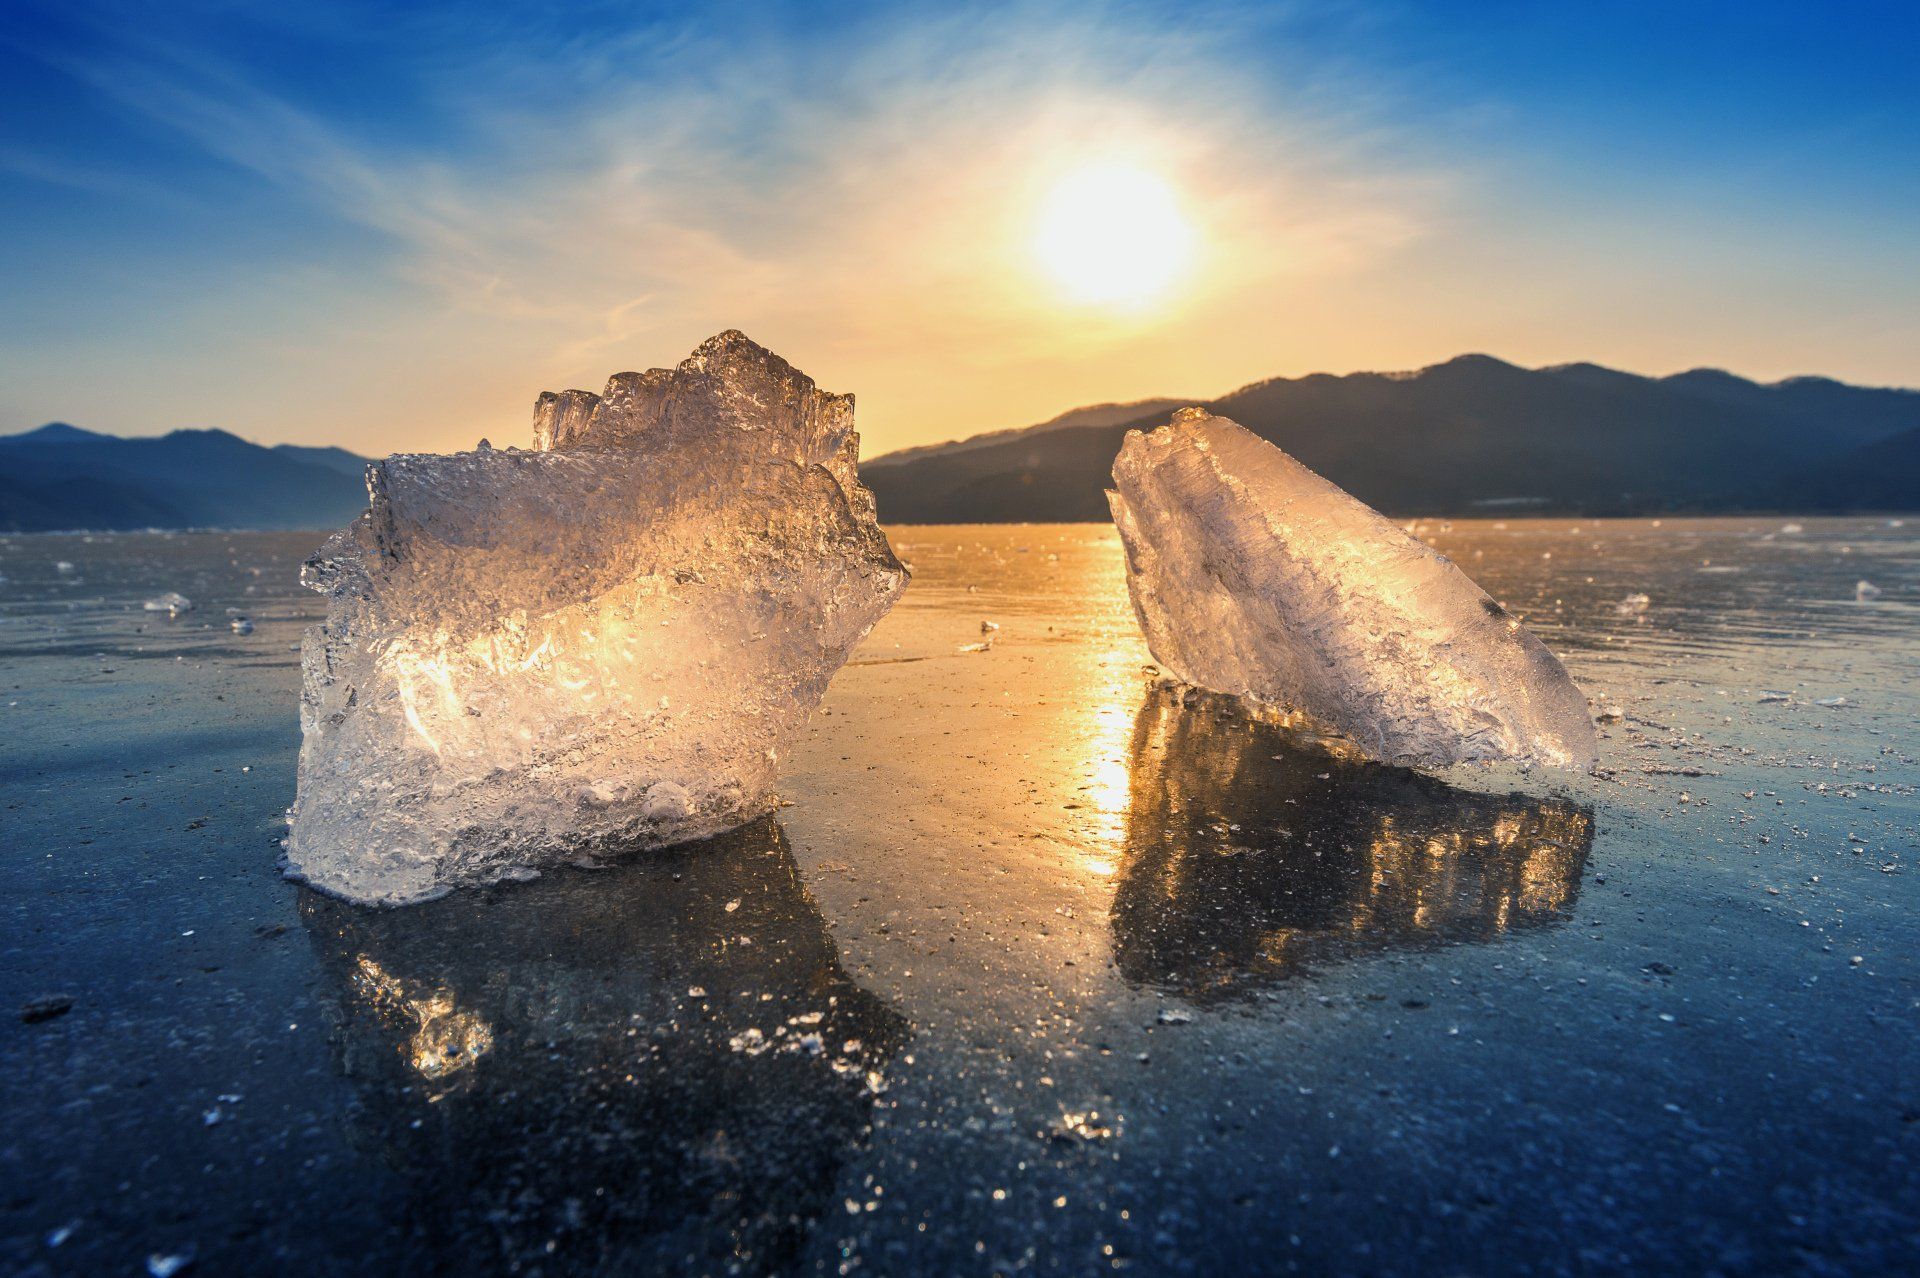 Trozo de hielo muy grande y hermoso al amanecer en invierno